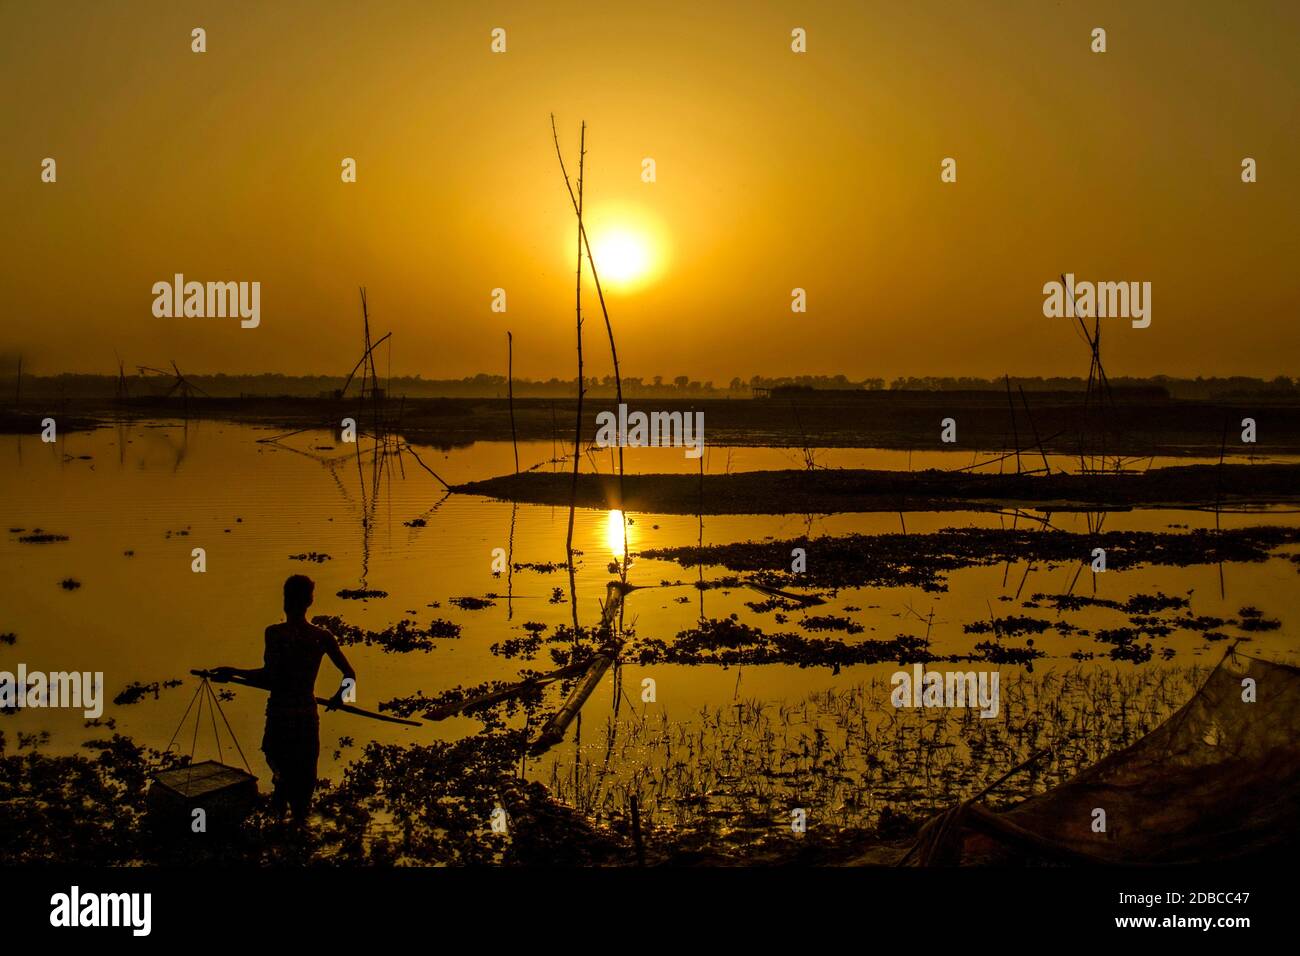 Beautiful sunsets of Bangladesh Stock Photo